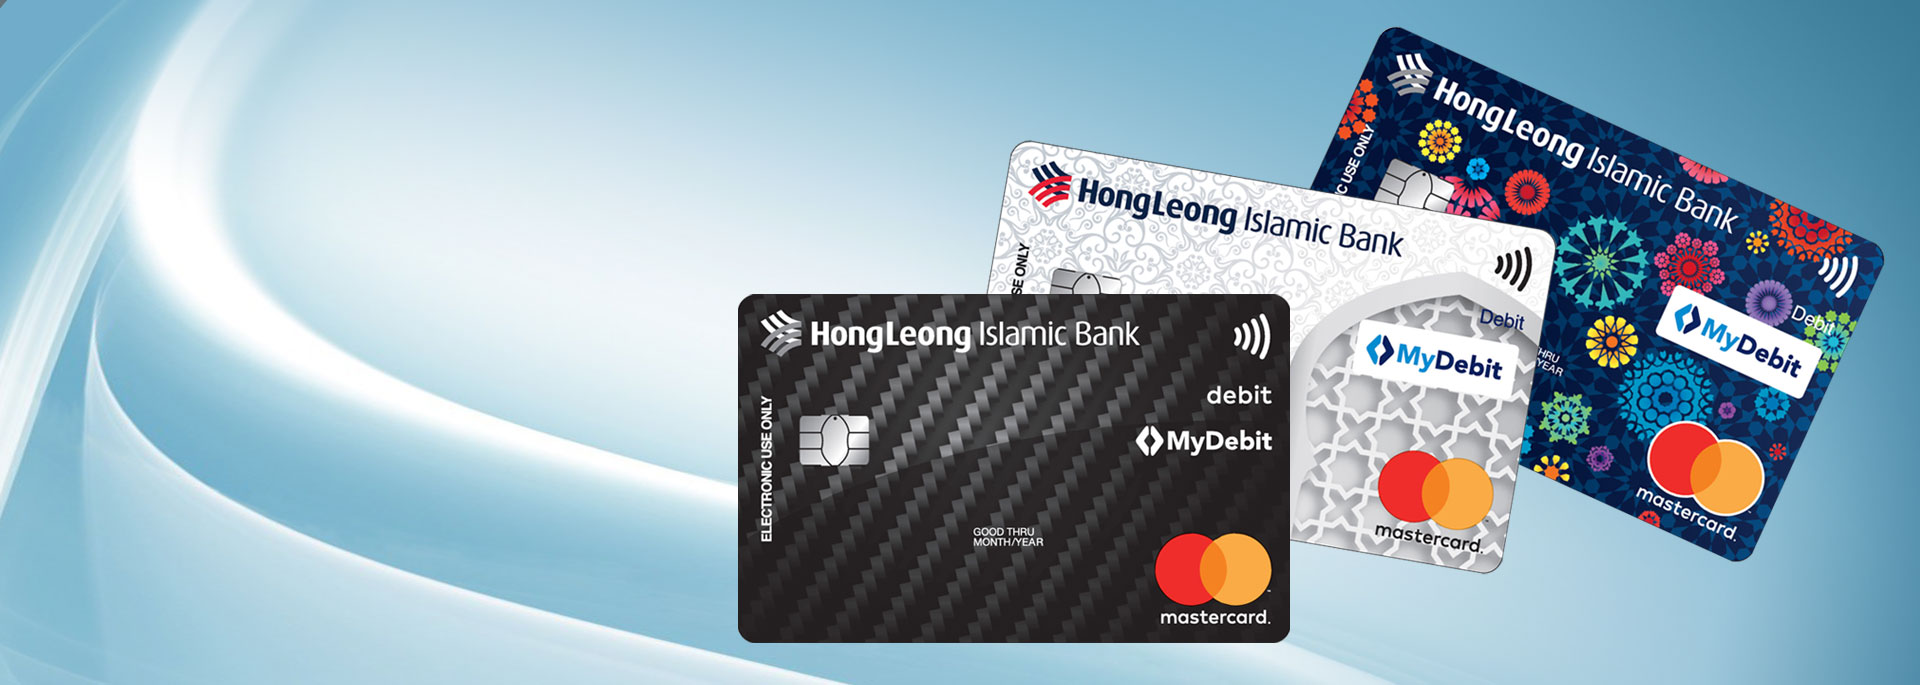 Hong leong bank online banking